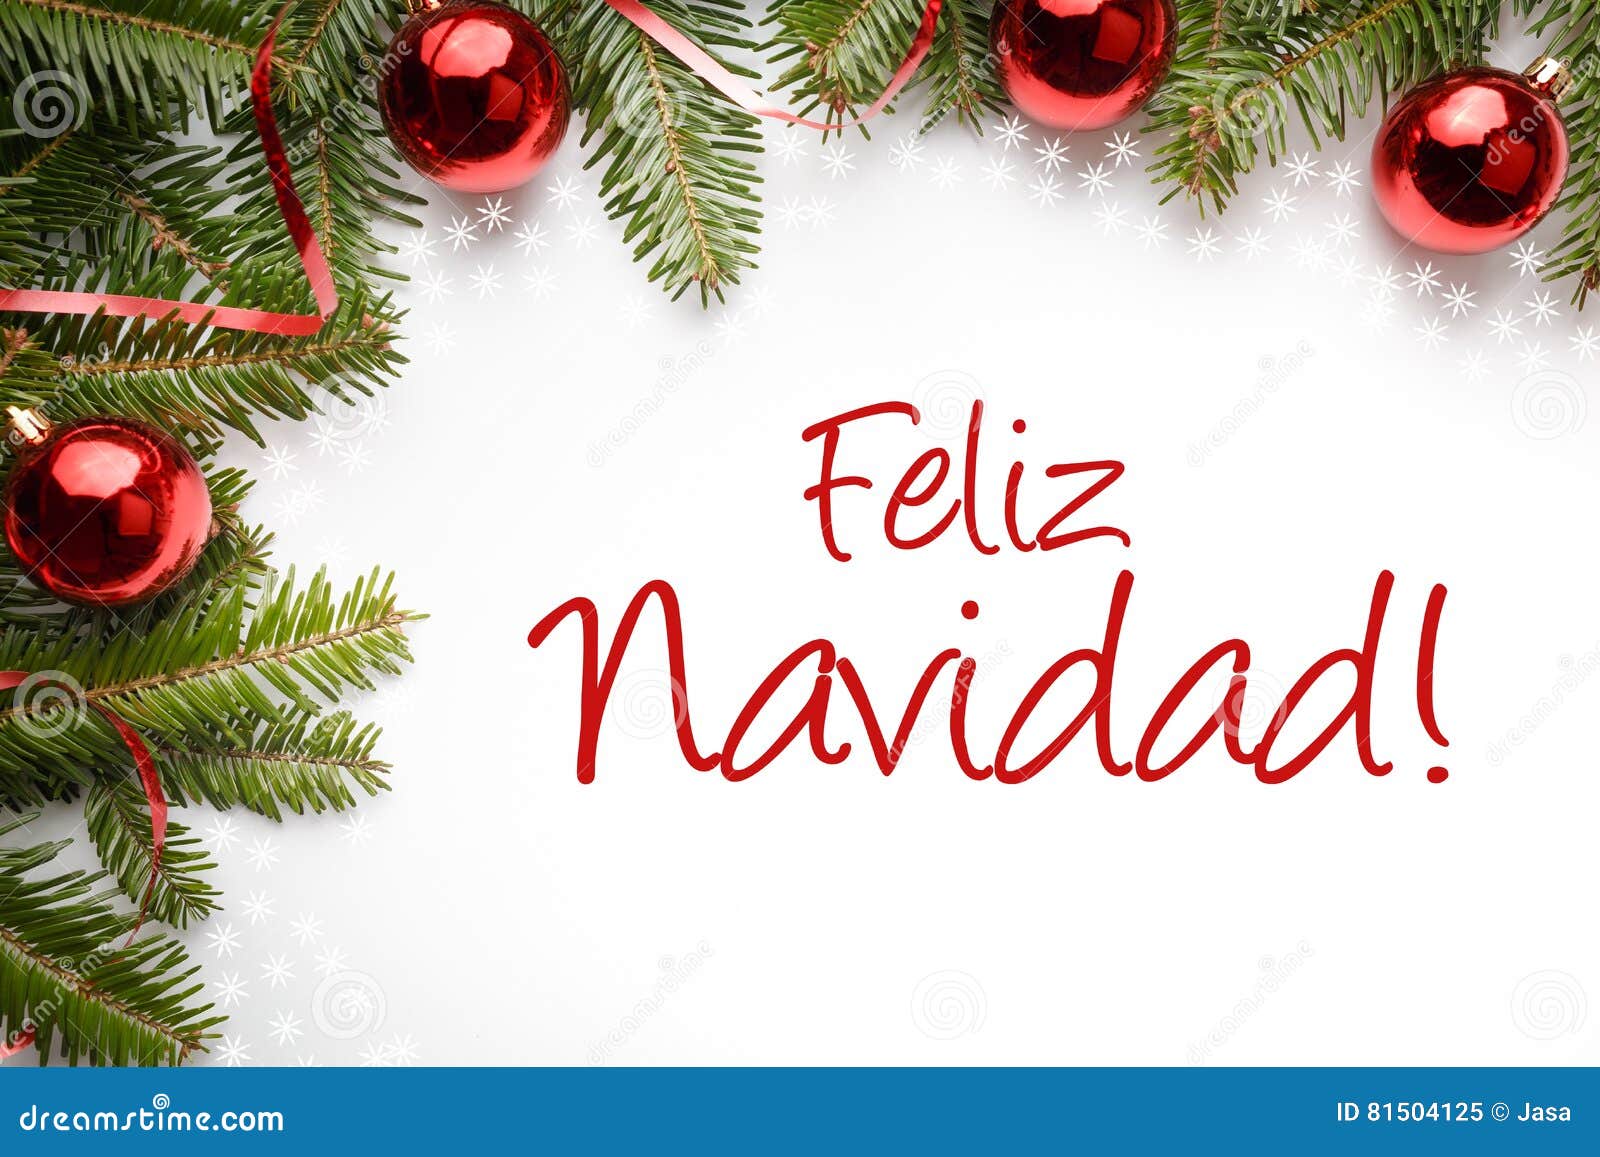 Decorações Do Natal Com Cumprimento Do Natal No ` Espanhol Feliz Navidad!  Feliz Natal Do `! Imagem de Stock - Imagem de esfera, alegre: 81504125